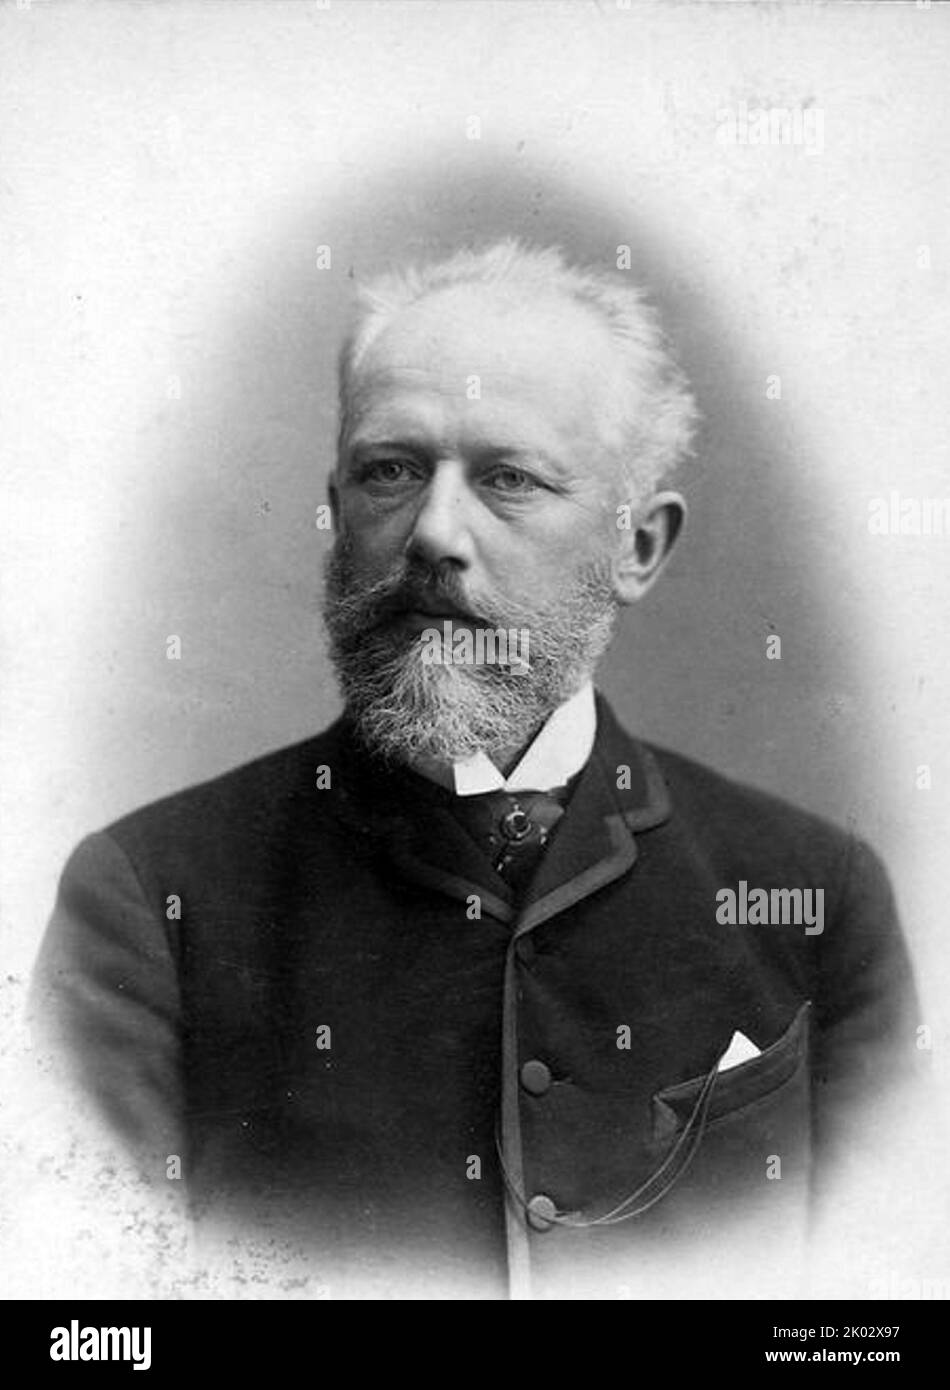 Pjotr Iljitsch Tschaikowsky (1840 - 1893) ein russischer Komponist der Romantik. Stockfoto